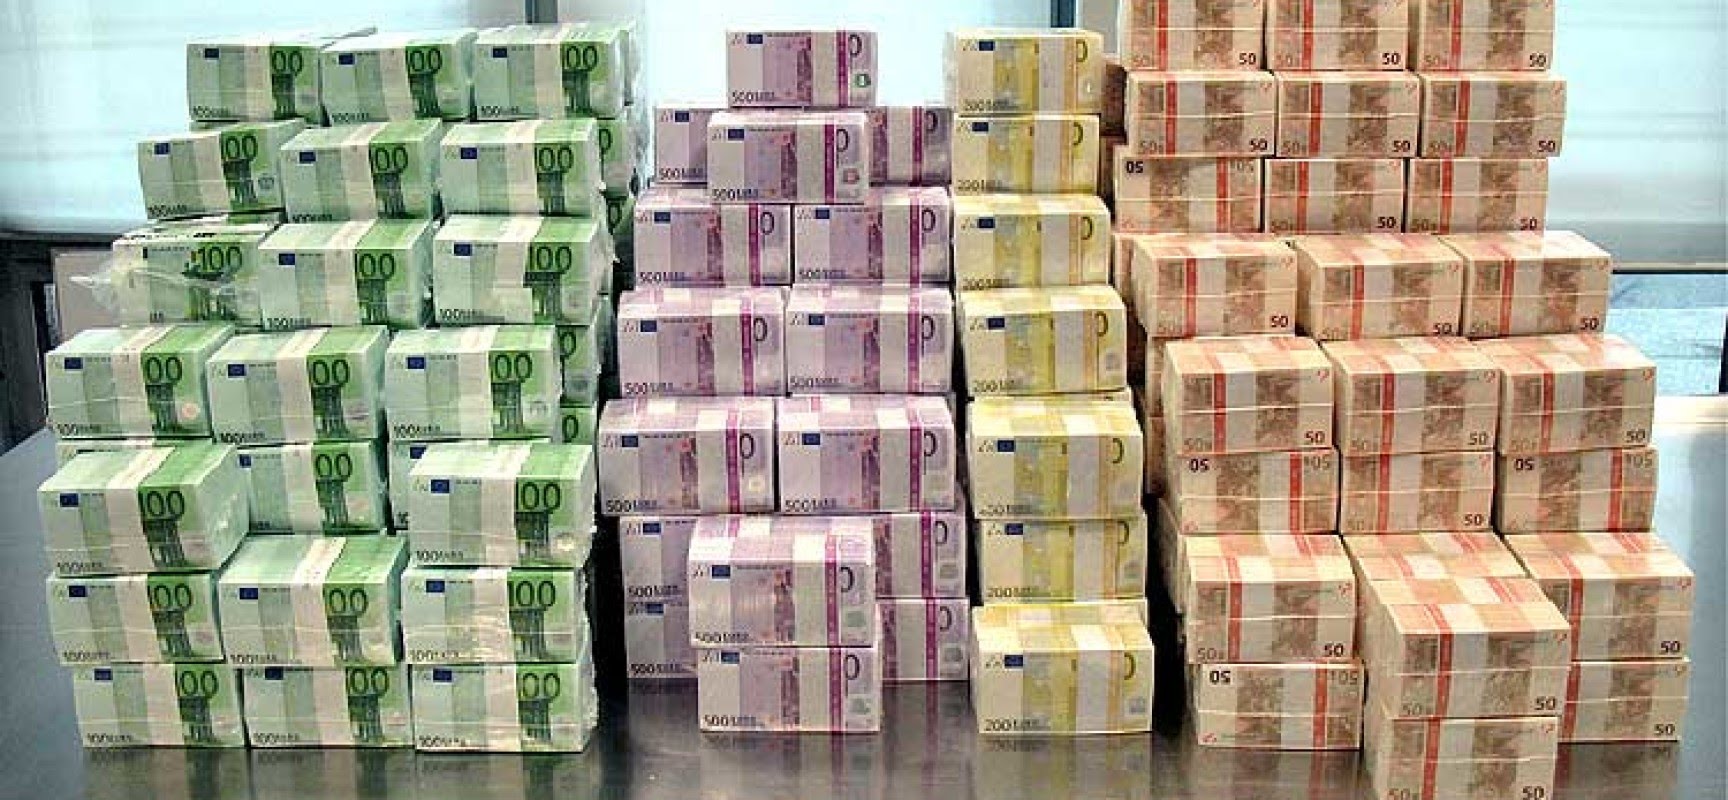 Как отличить фальшивые Евро? - 16 простых способов | Журнал для банков BANKOMAT 24